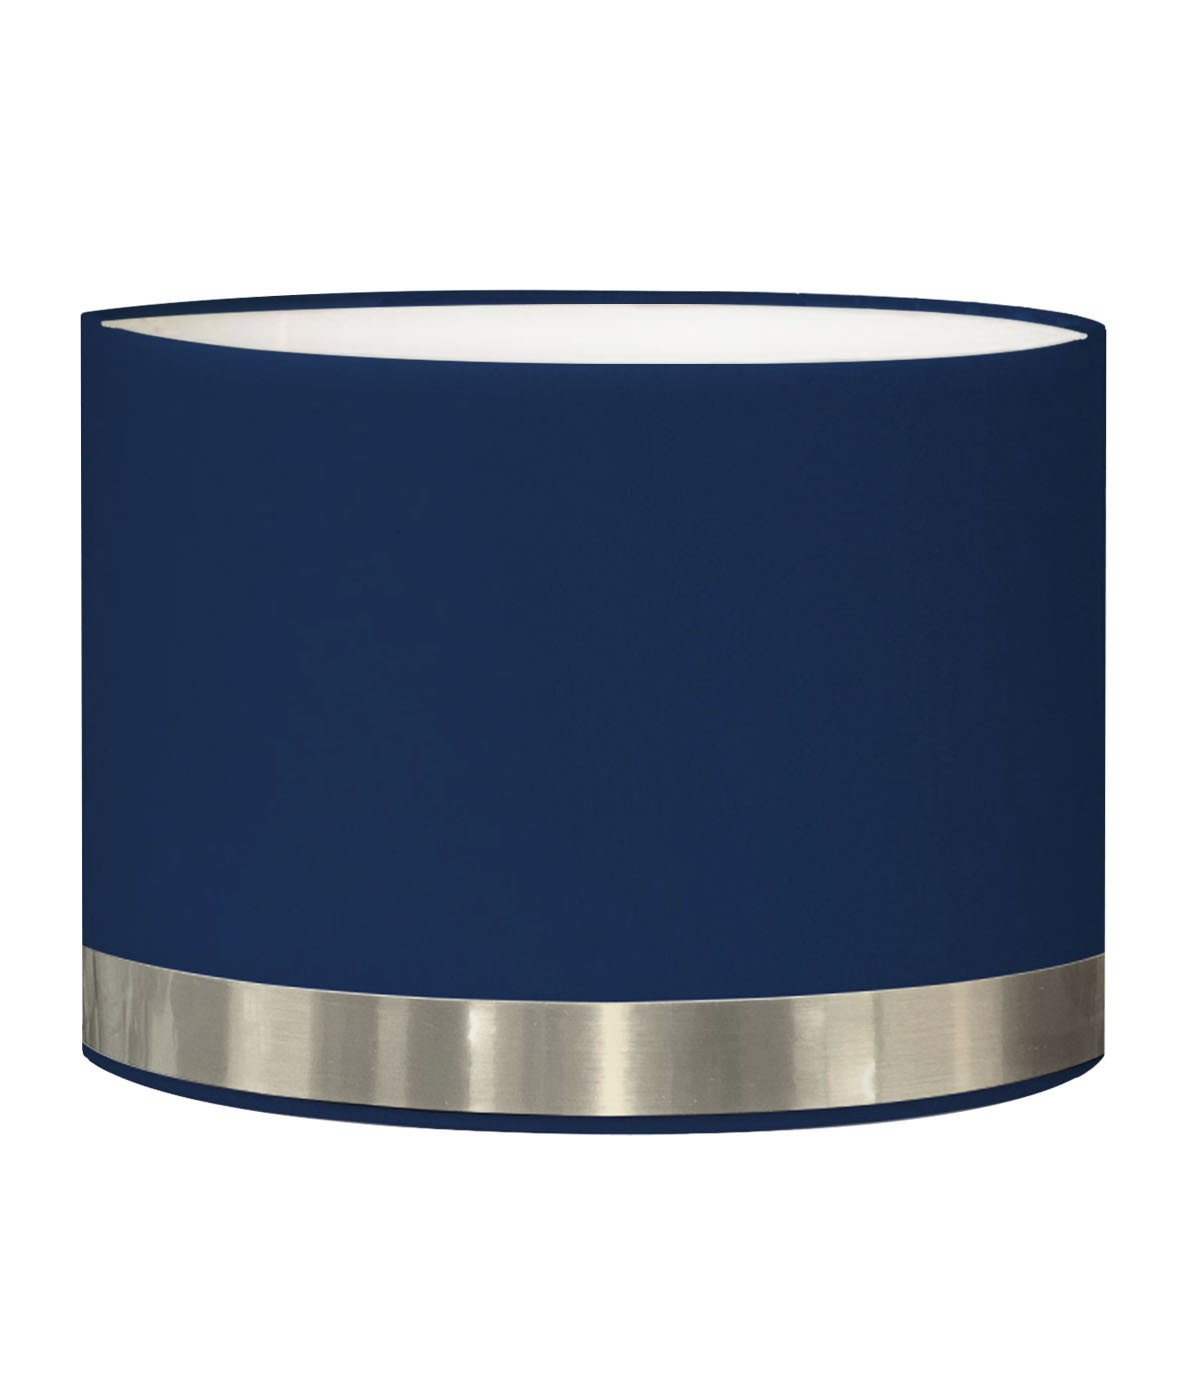 abat-jour pour chevet rond bleu jonc aluminium d: 25 x h: 20